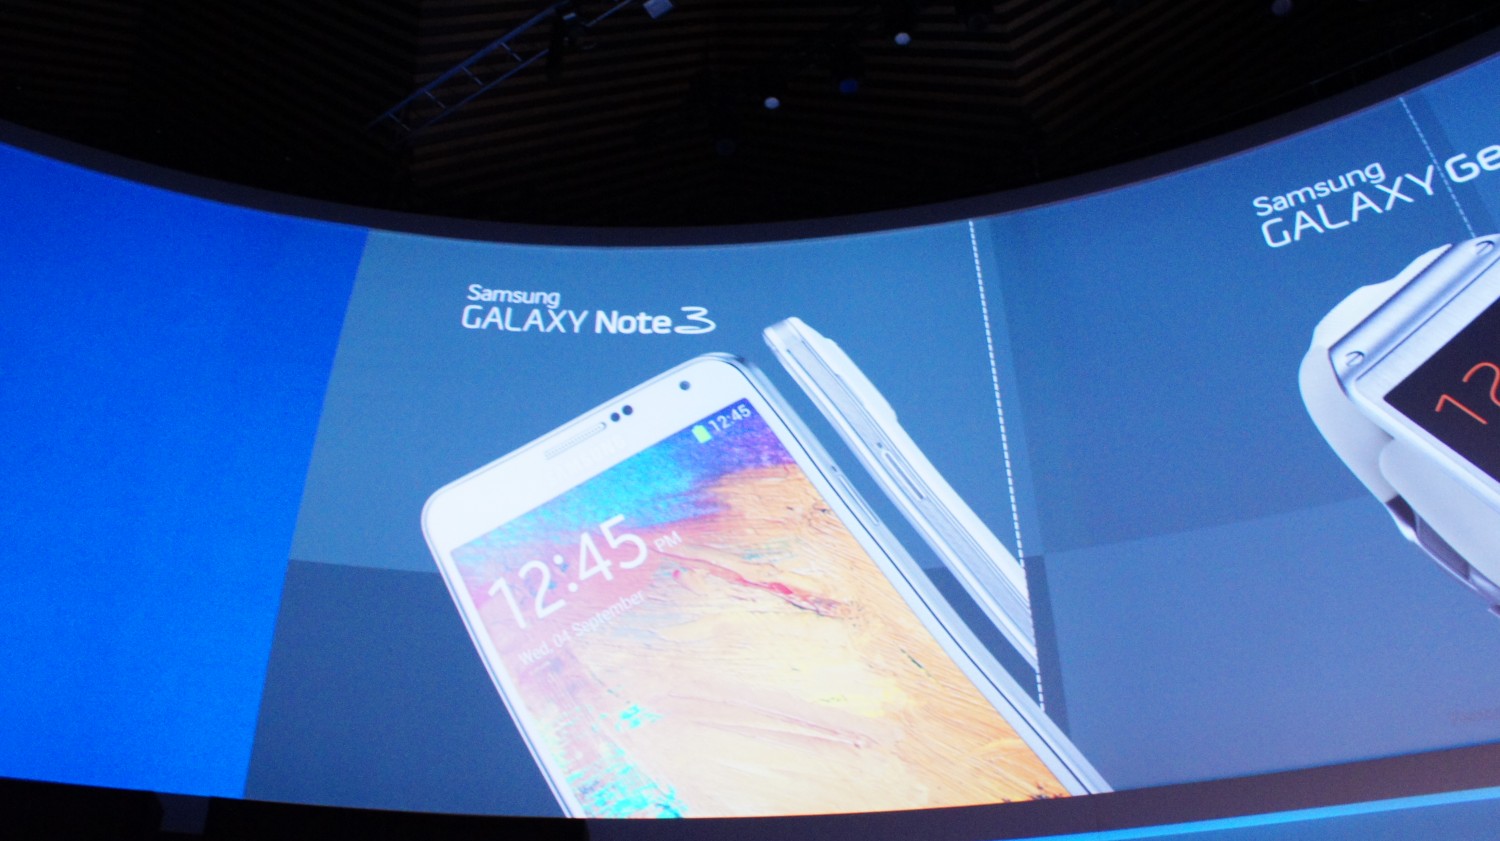 Samsung UNPACKED Episode 2 Galaxy Note 3